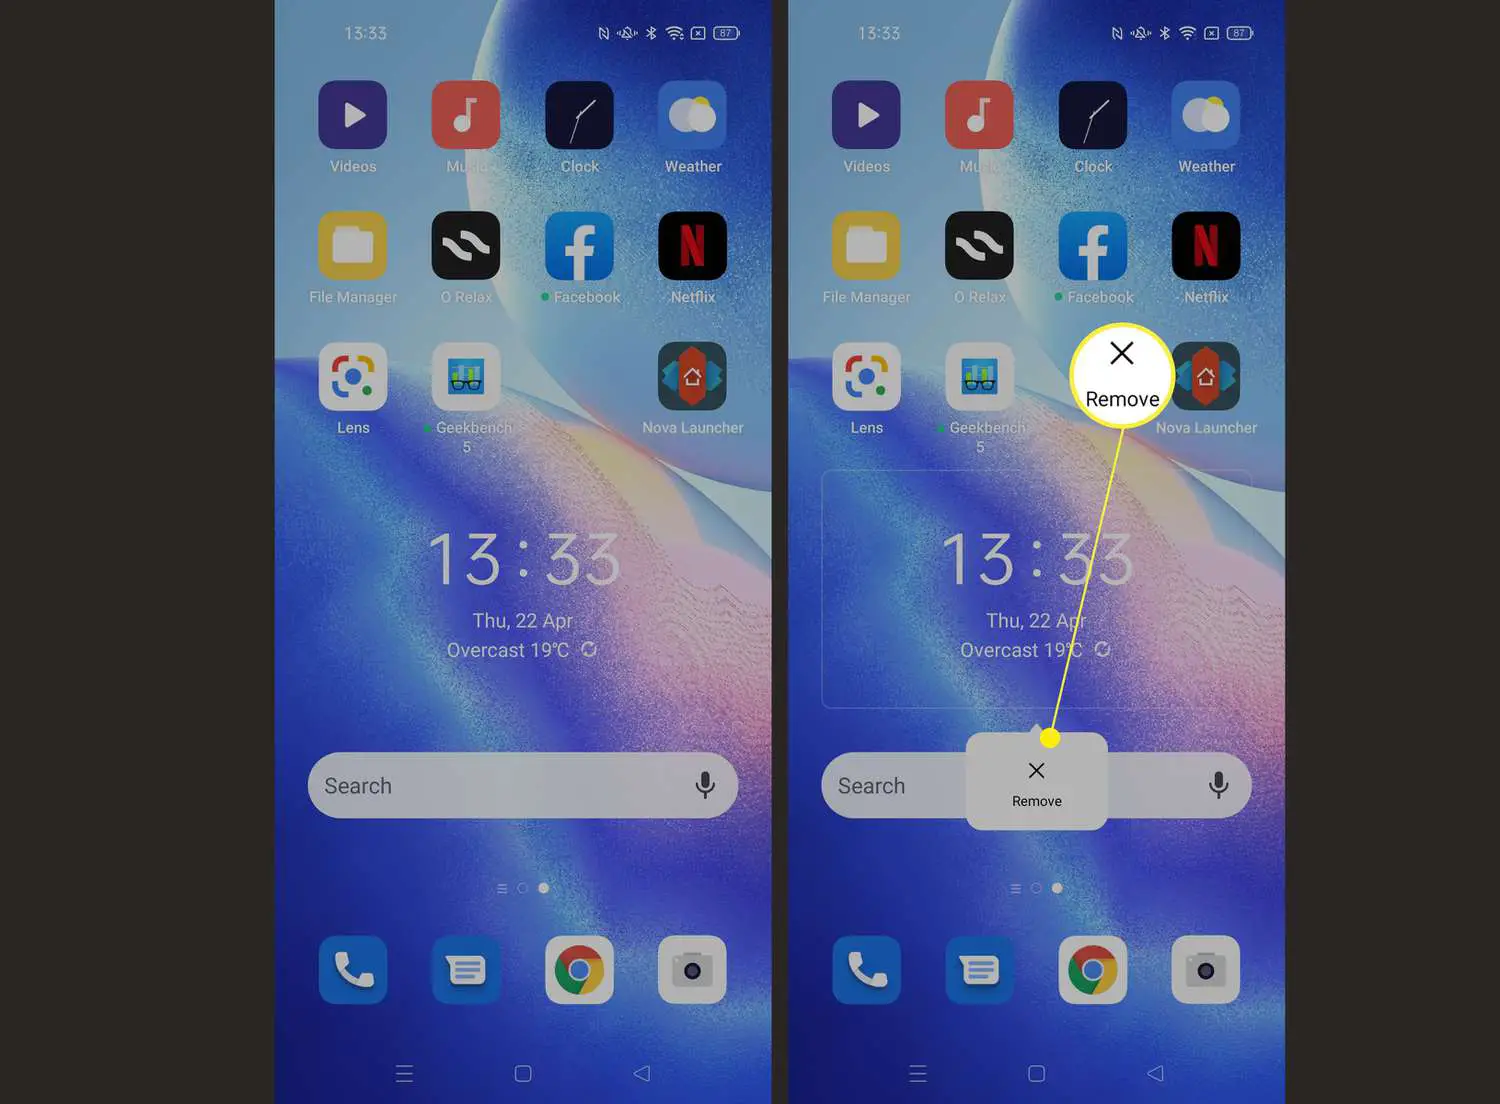 Etapas necessárias para desinstalar/remover widgets no Android